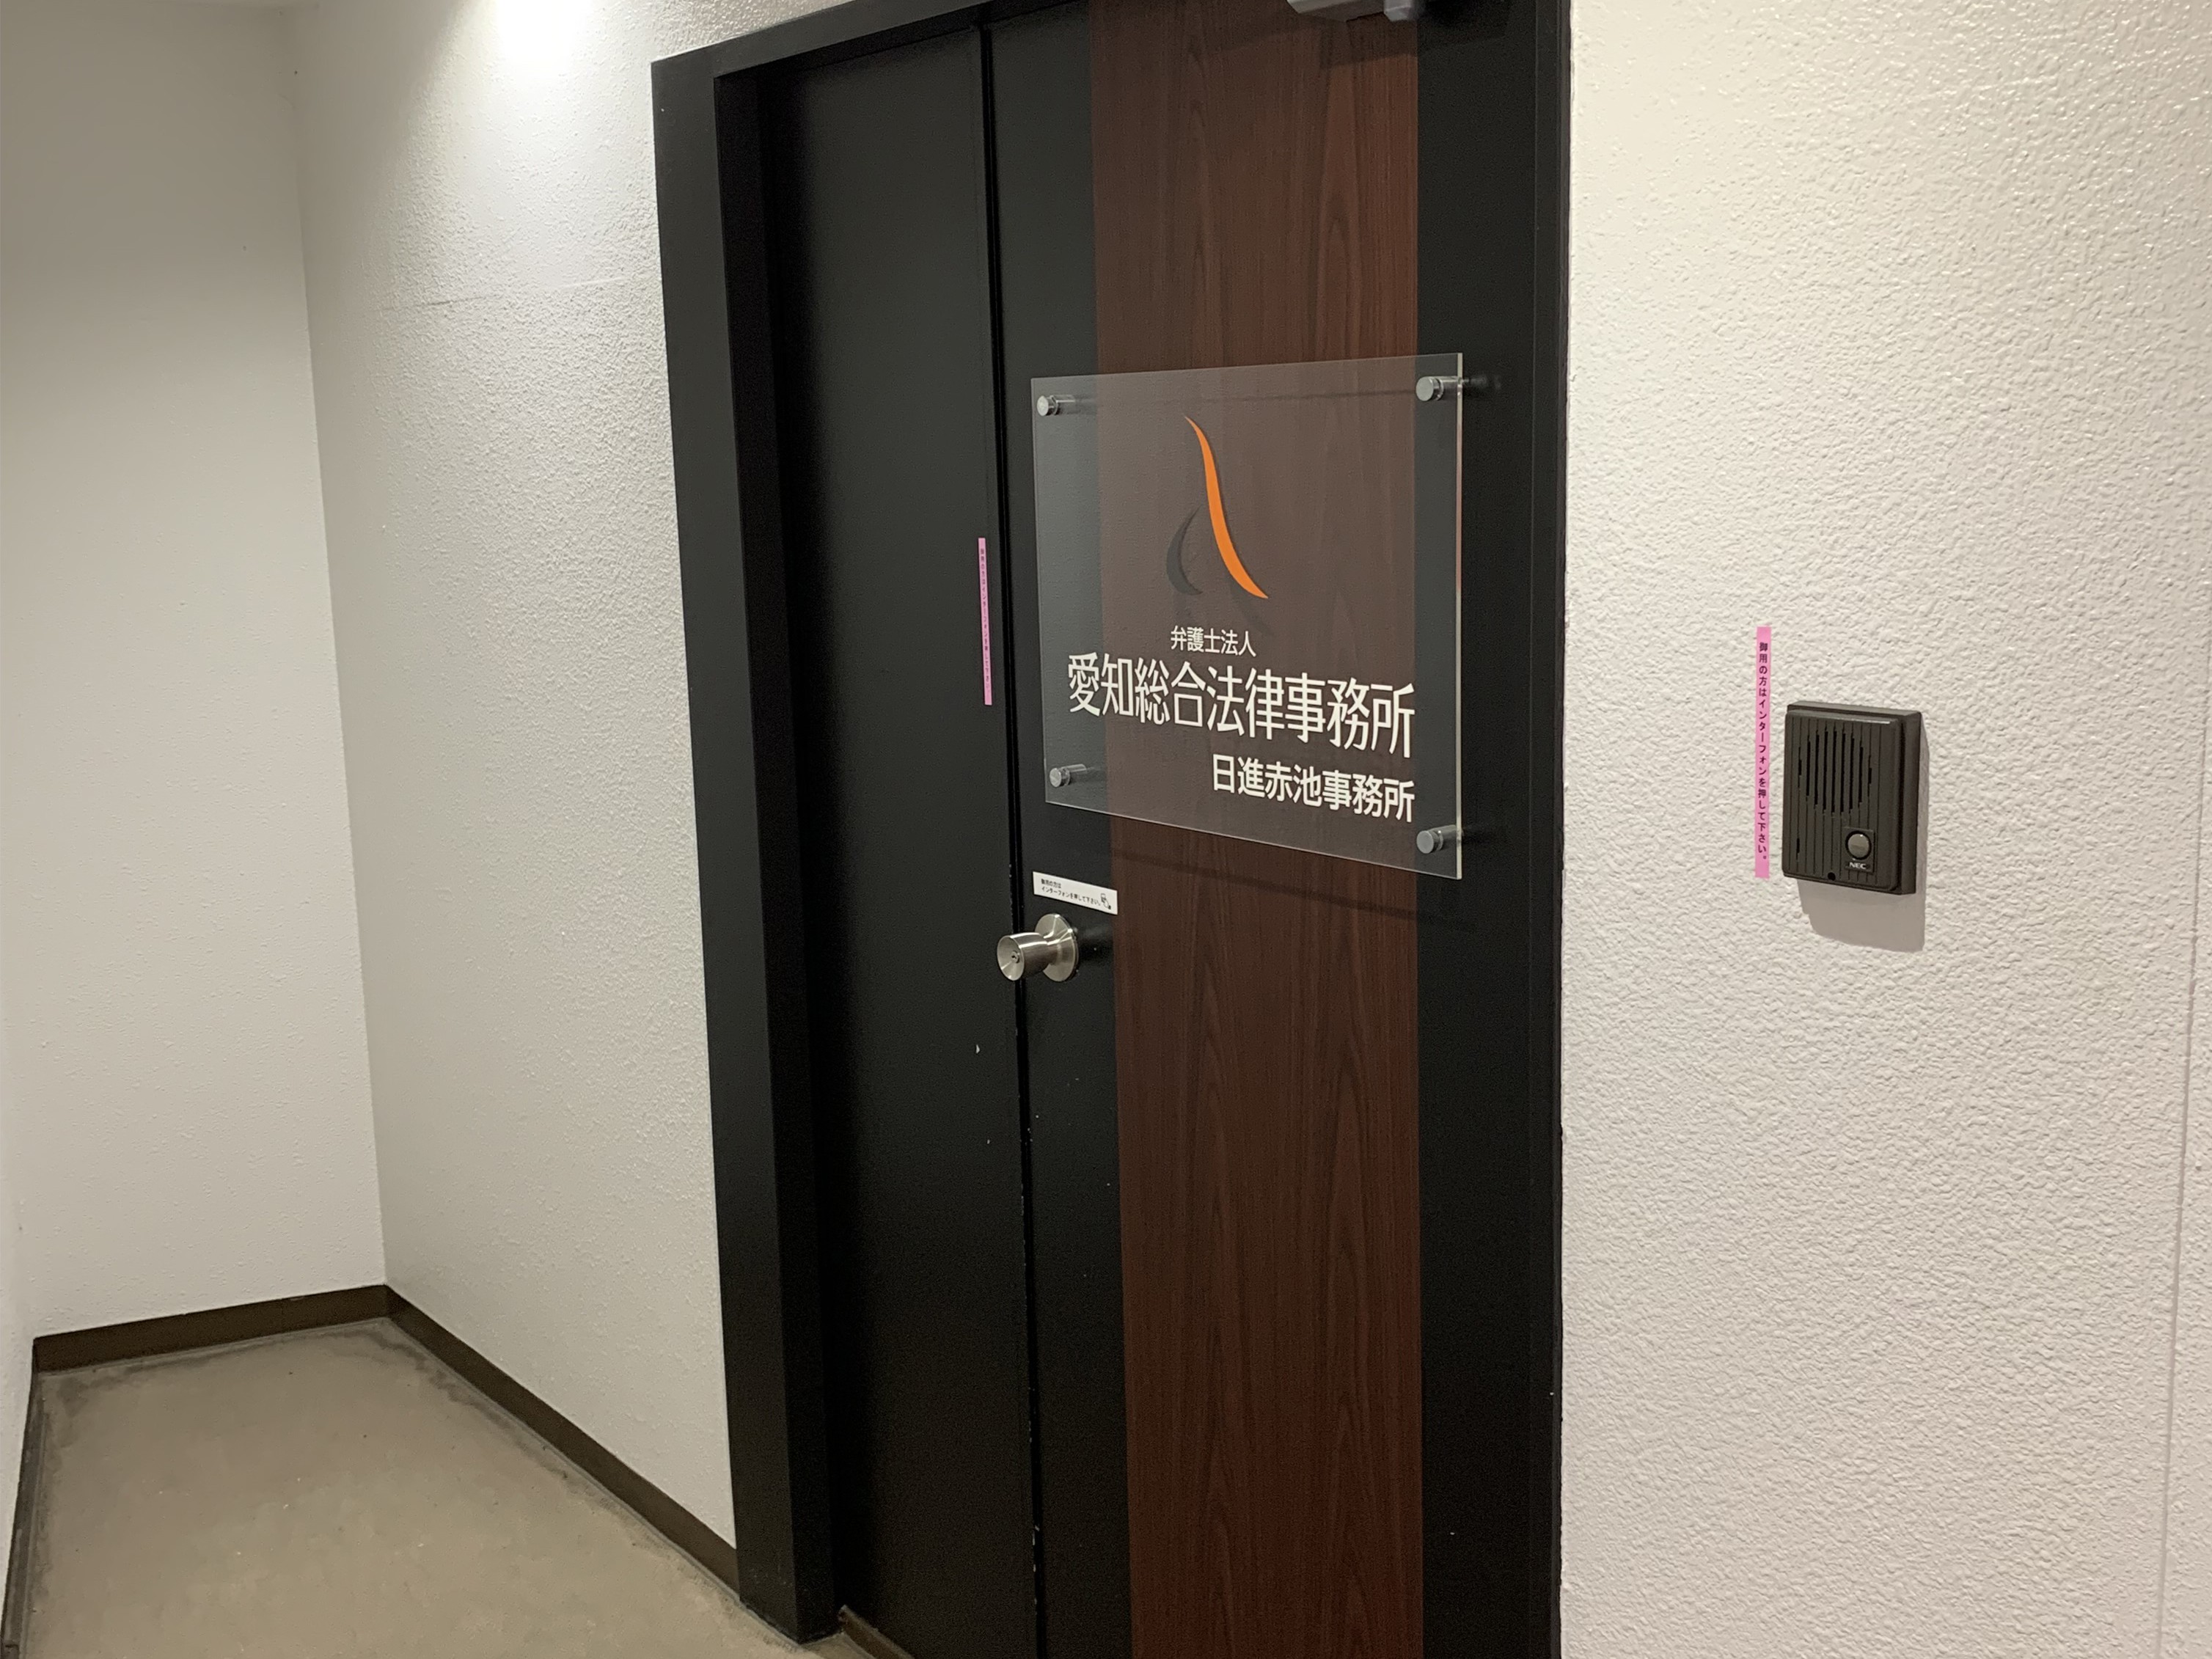 愛知総合法律事務所は3階です